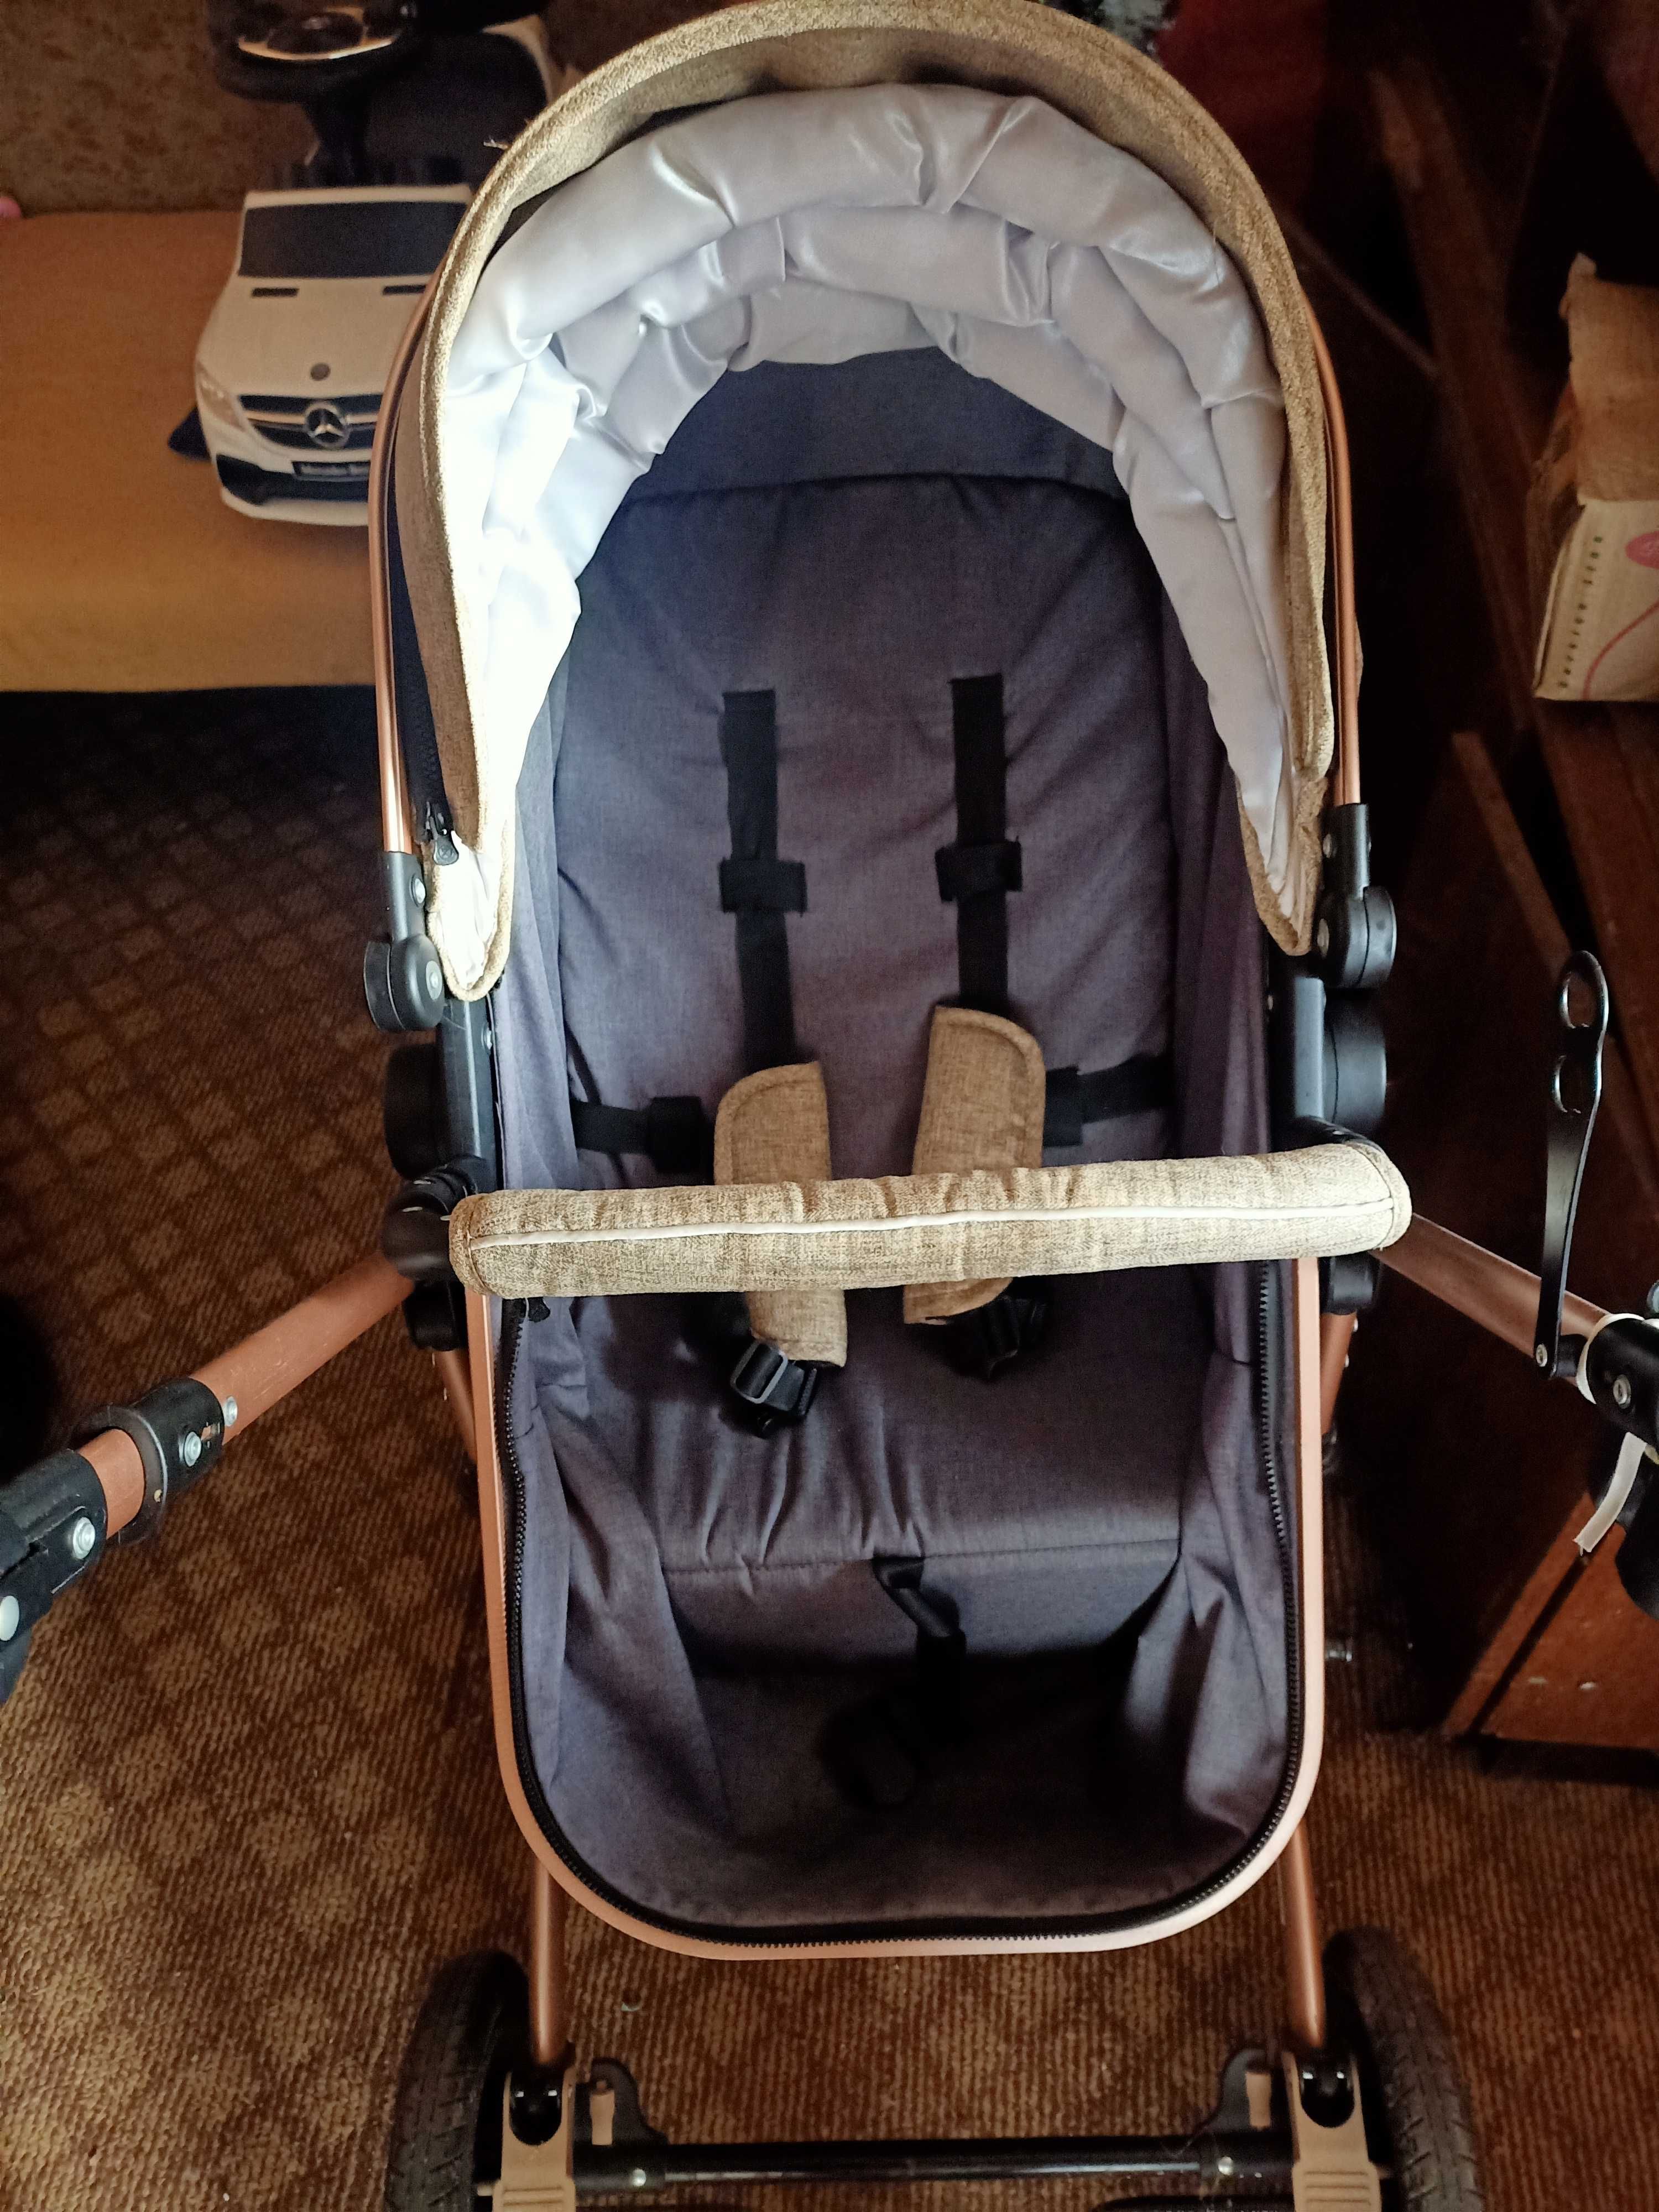 Бебешка/детска количка